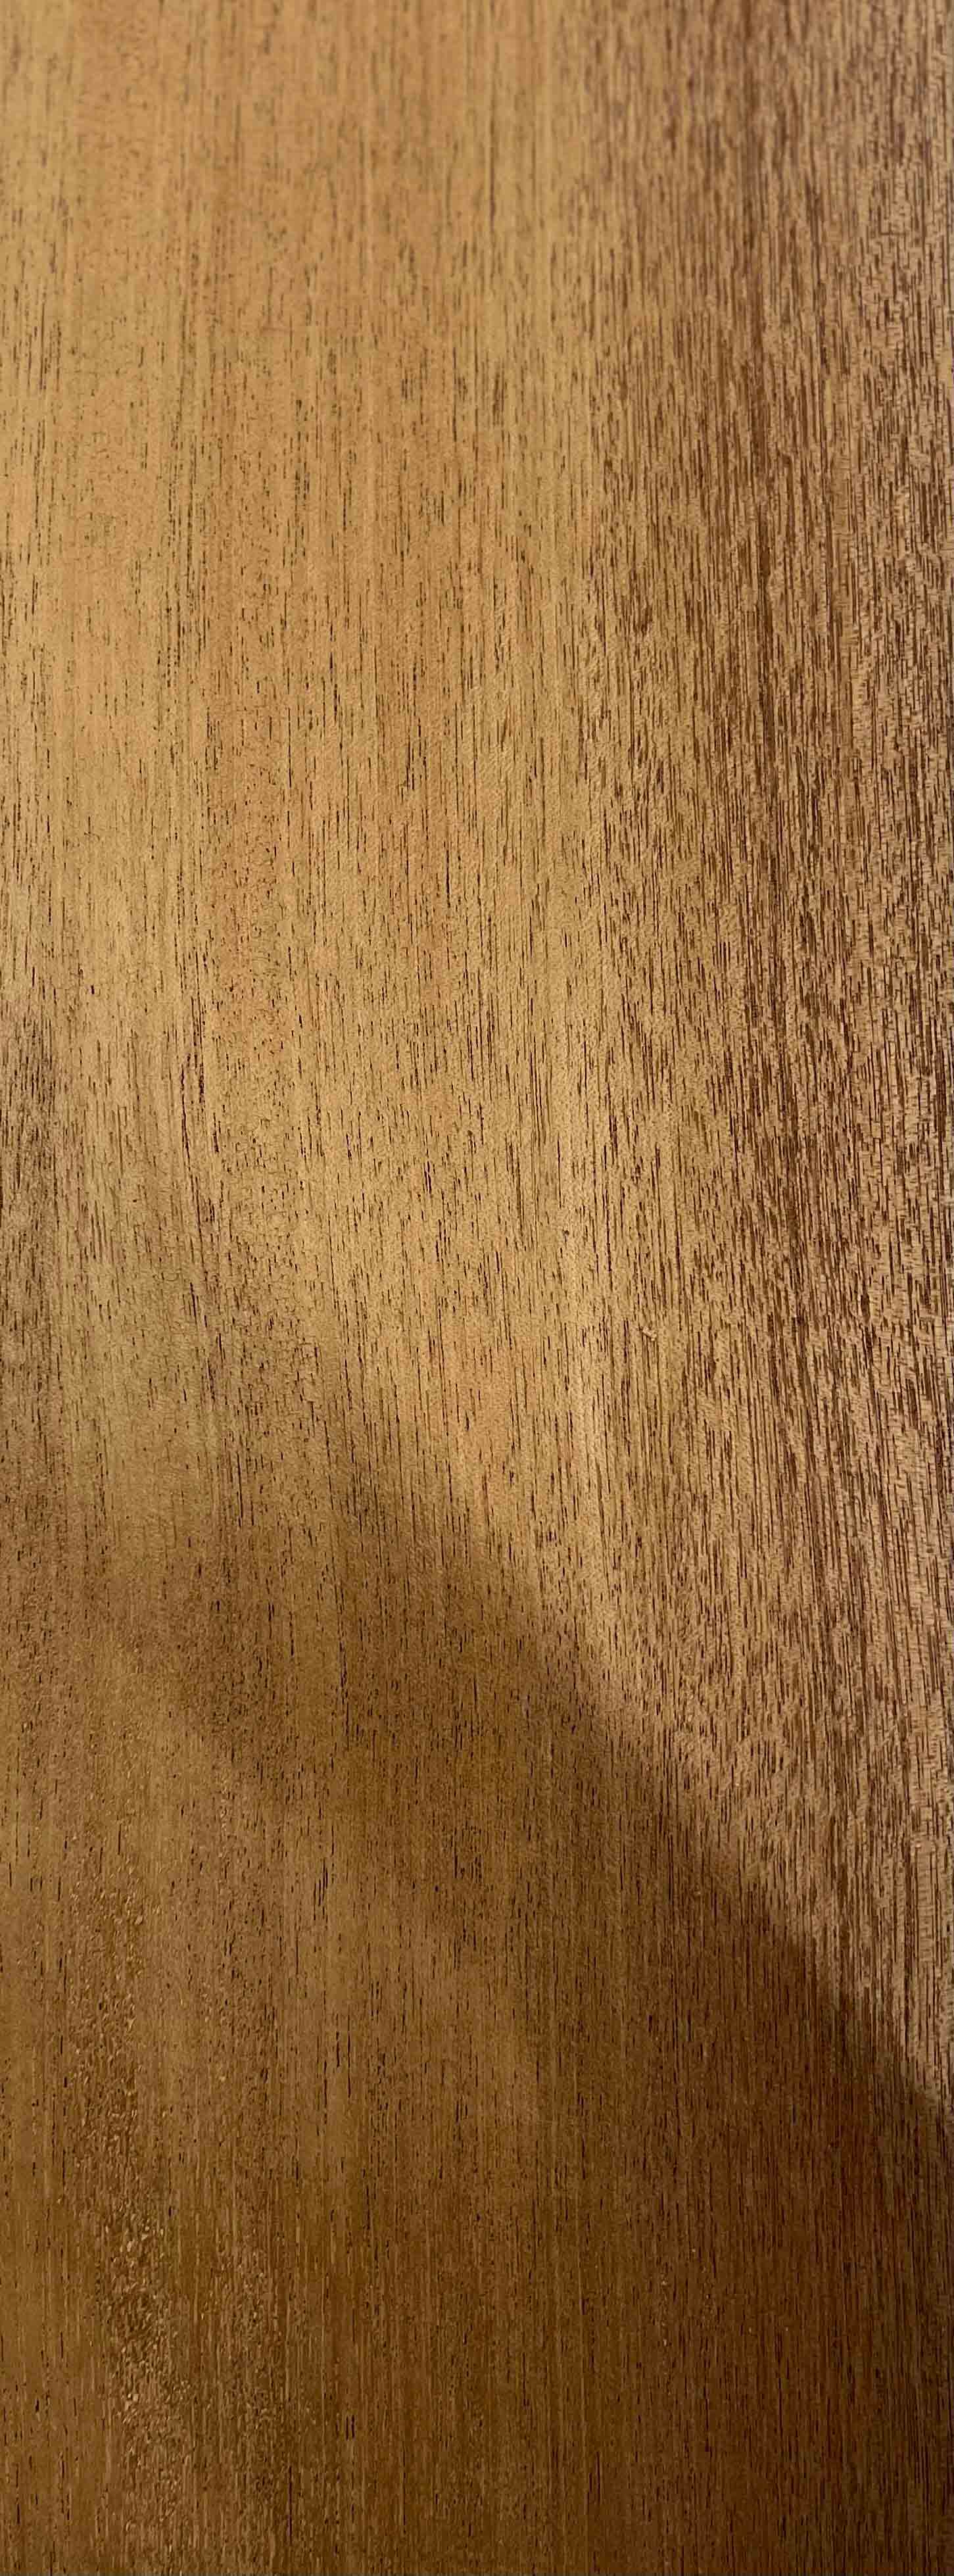 Tablones de madera de caoba, paquete de 2 unidades de madera de caoba para  manualidades de madera sin terminar, 1/8 de pulgada (0.118 in), madera dura